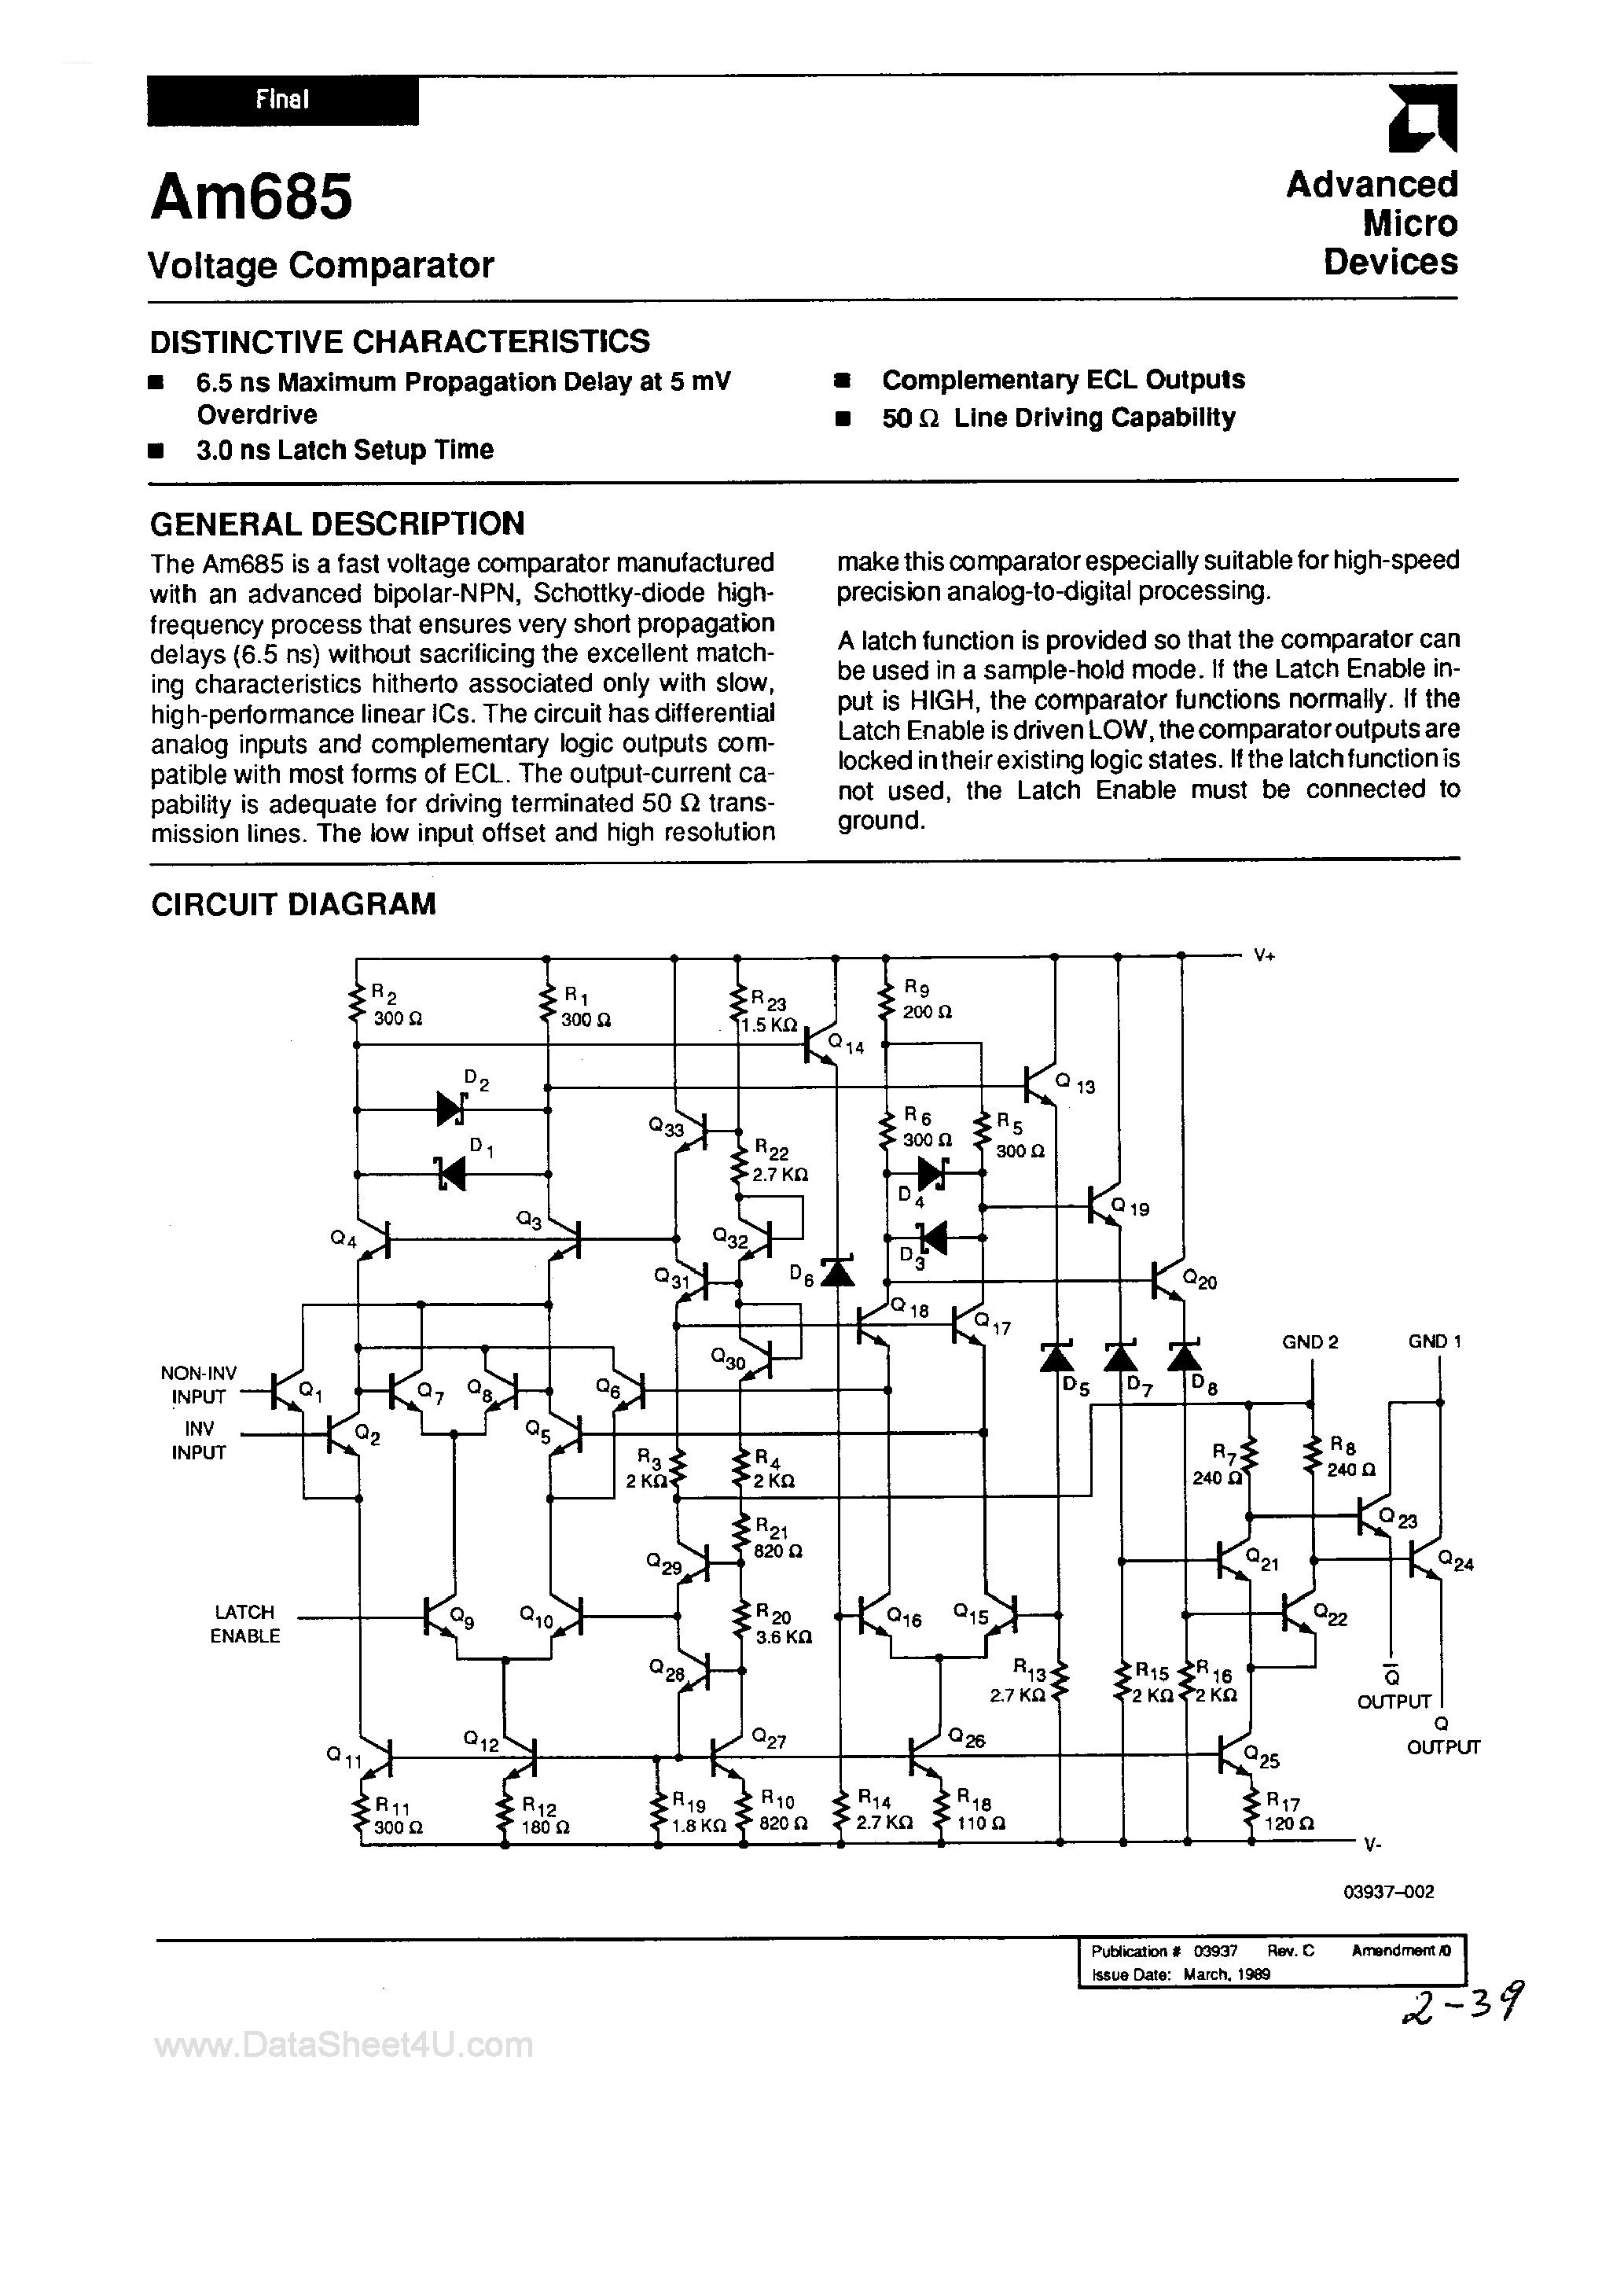 Даташит AM685-Voltage Comparator страница 1